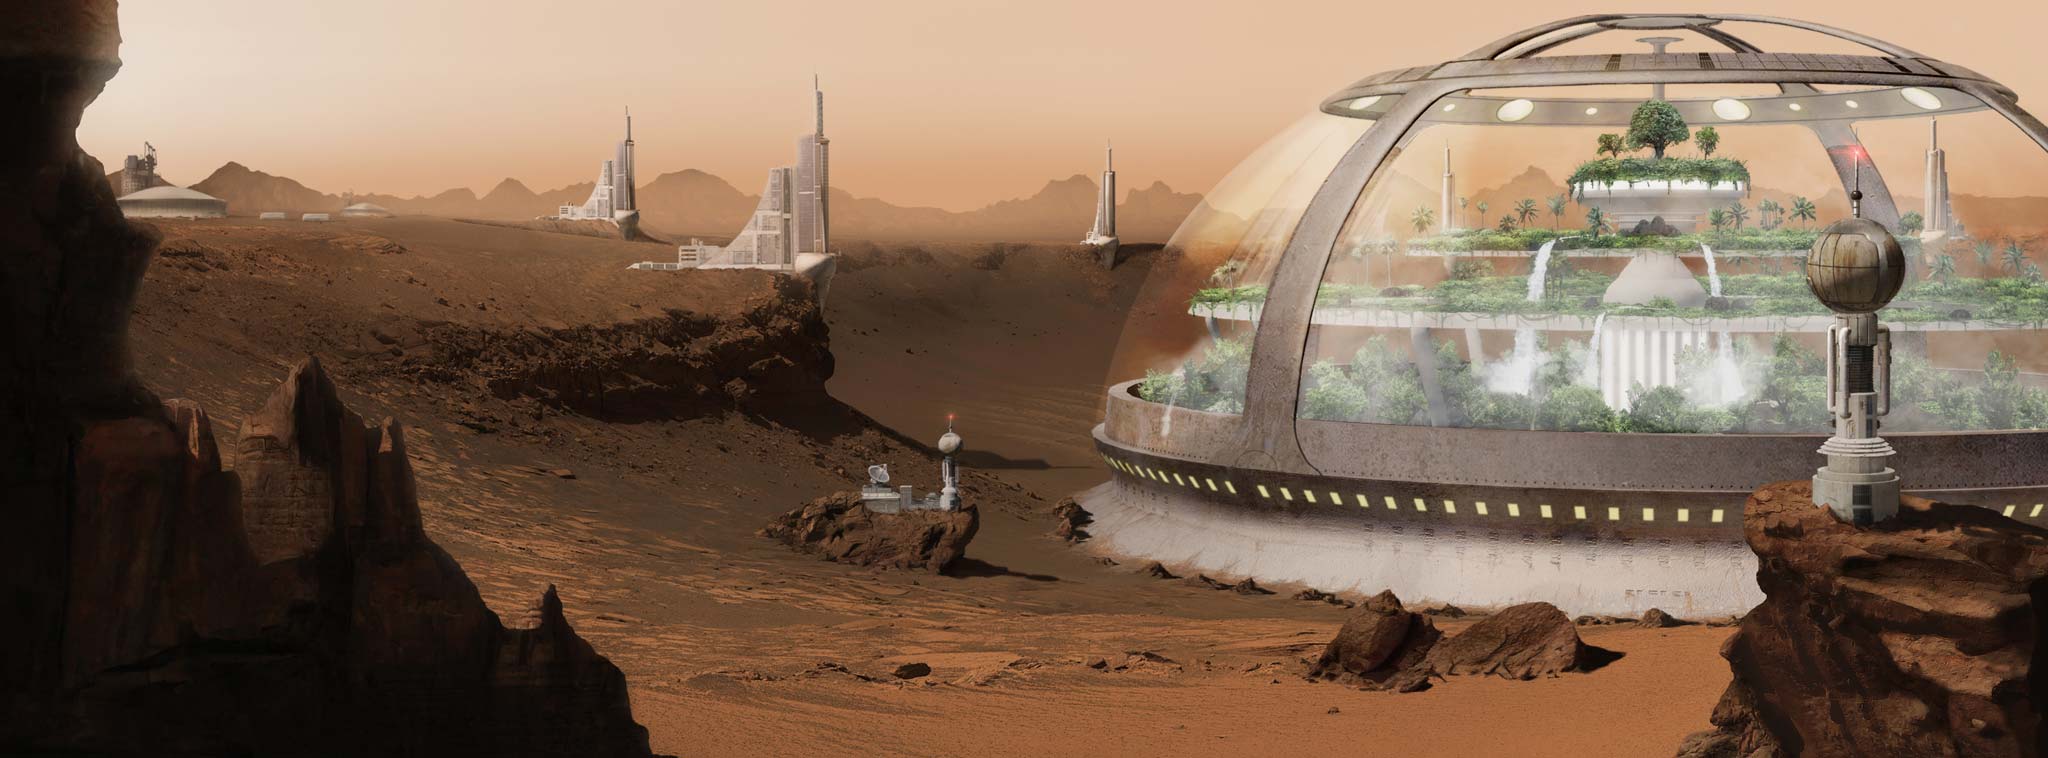 Các sứ mạng sao Hỏa của NASA có thể không thực hiện được do hết tiền